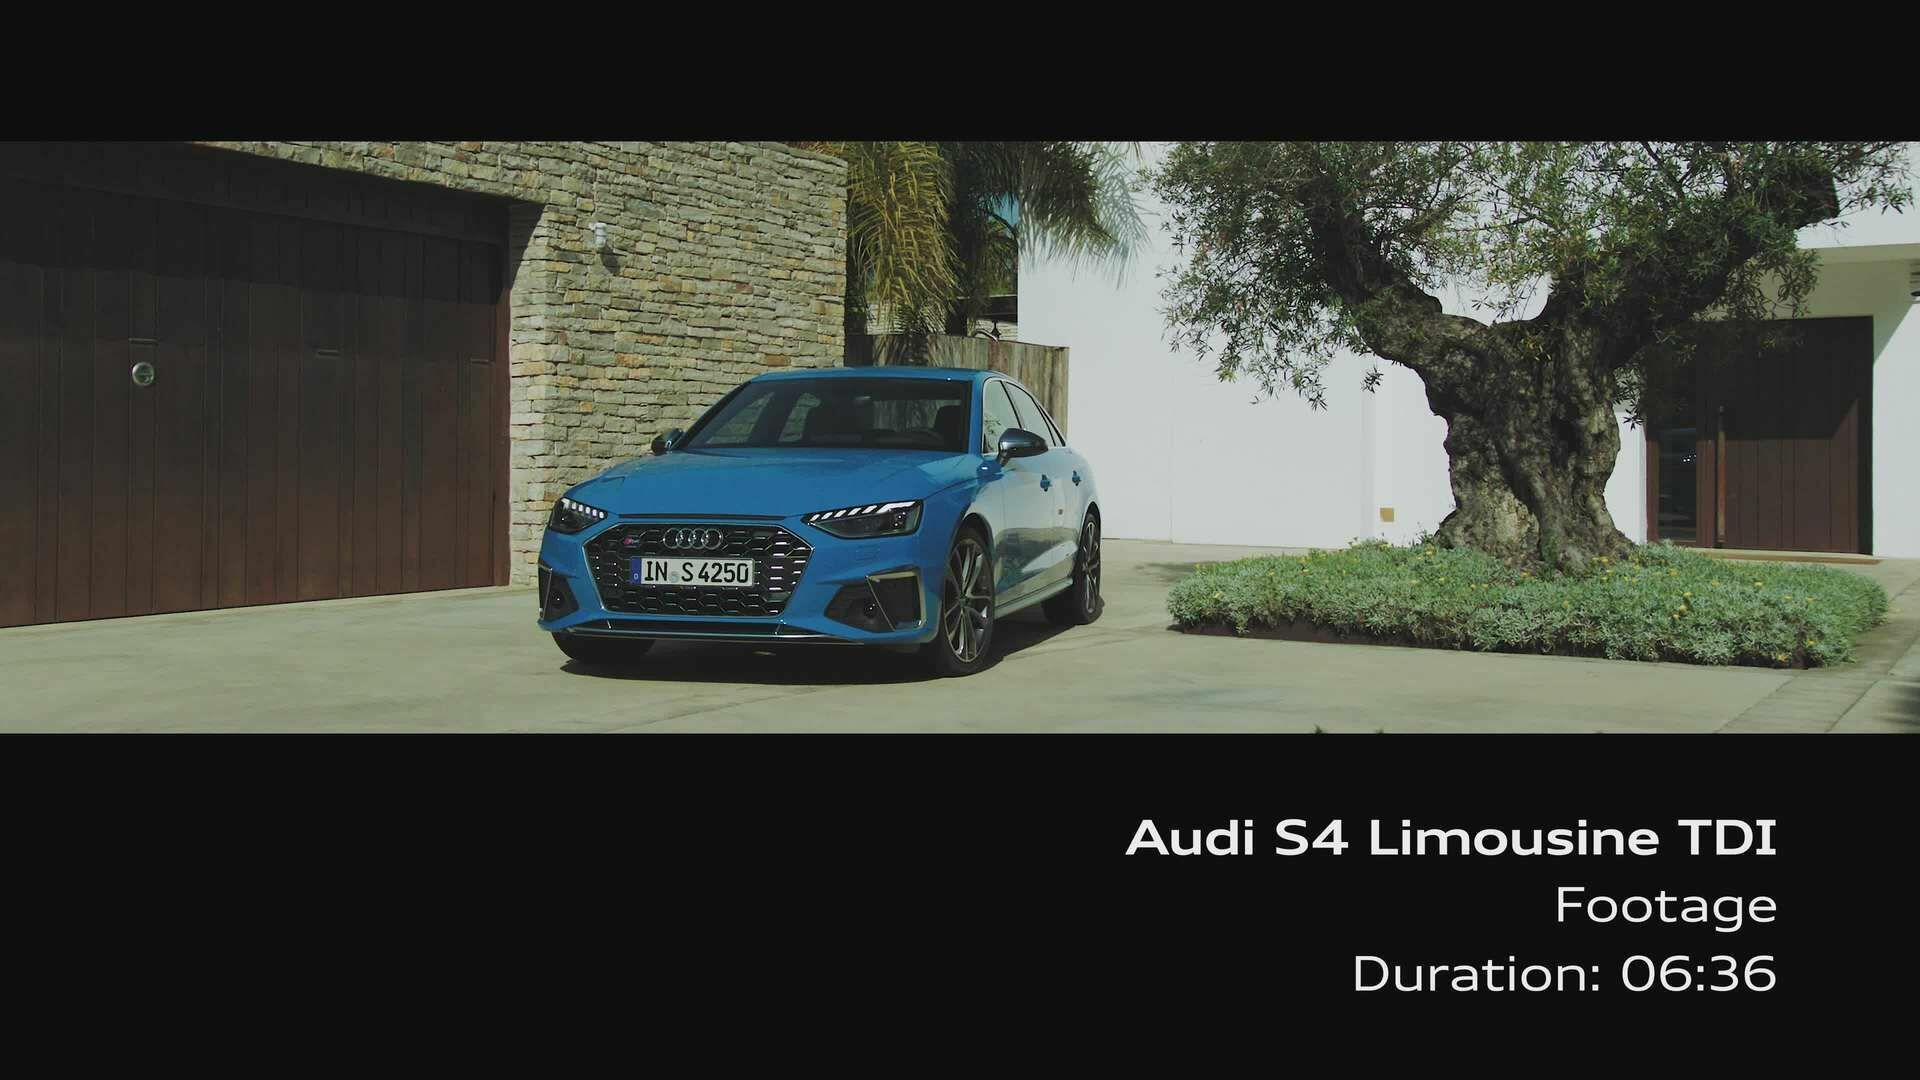 Audi S4 Limousine TDI (Footage)